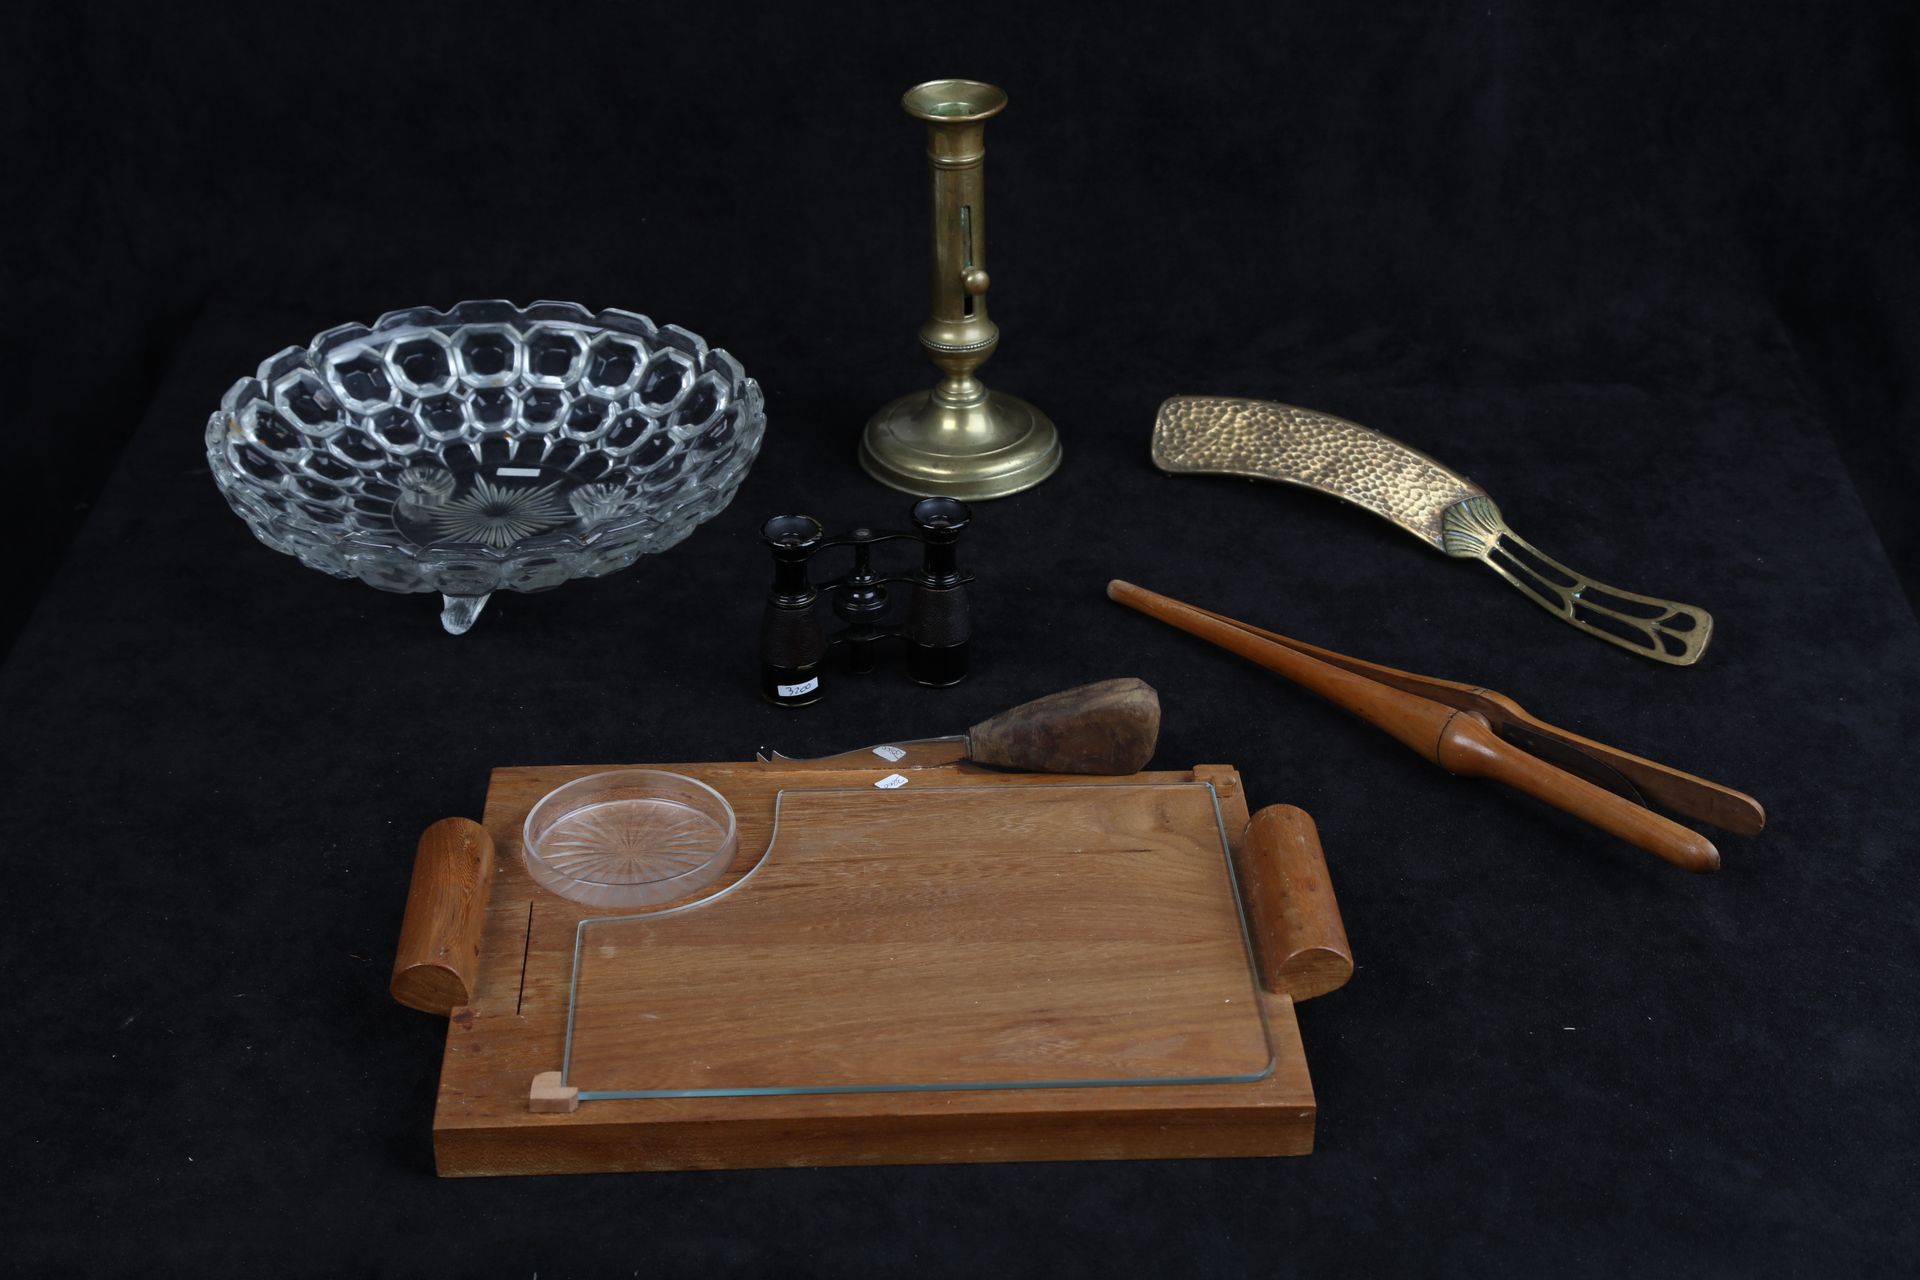 Null 玻璃碗，面包屑盘，手套夹，烛台，奶酪盘，一对双筒望远镜。